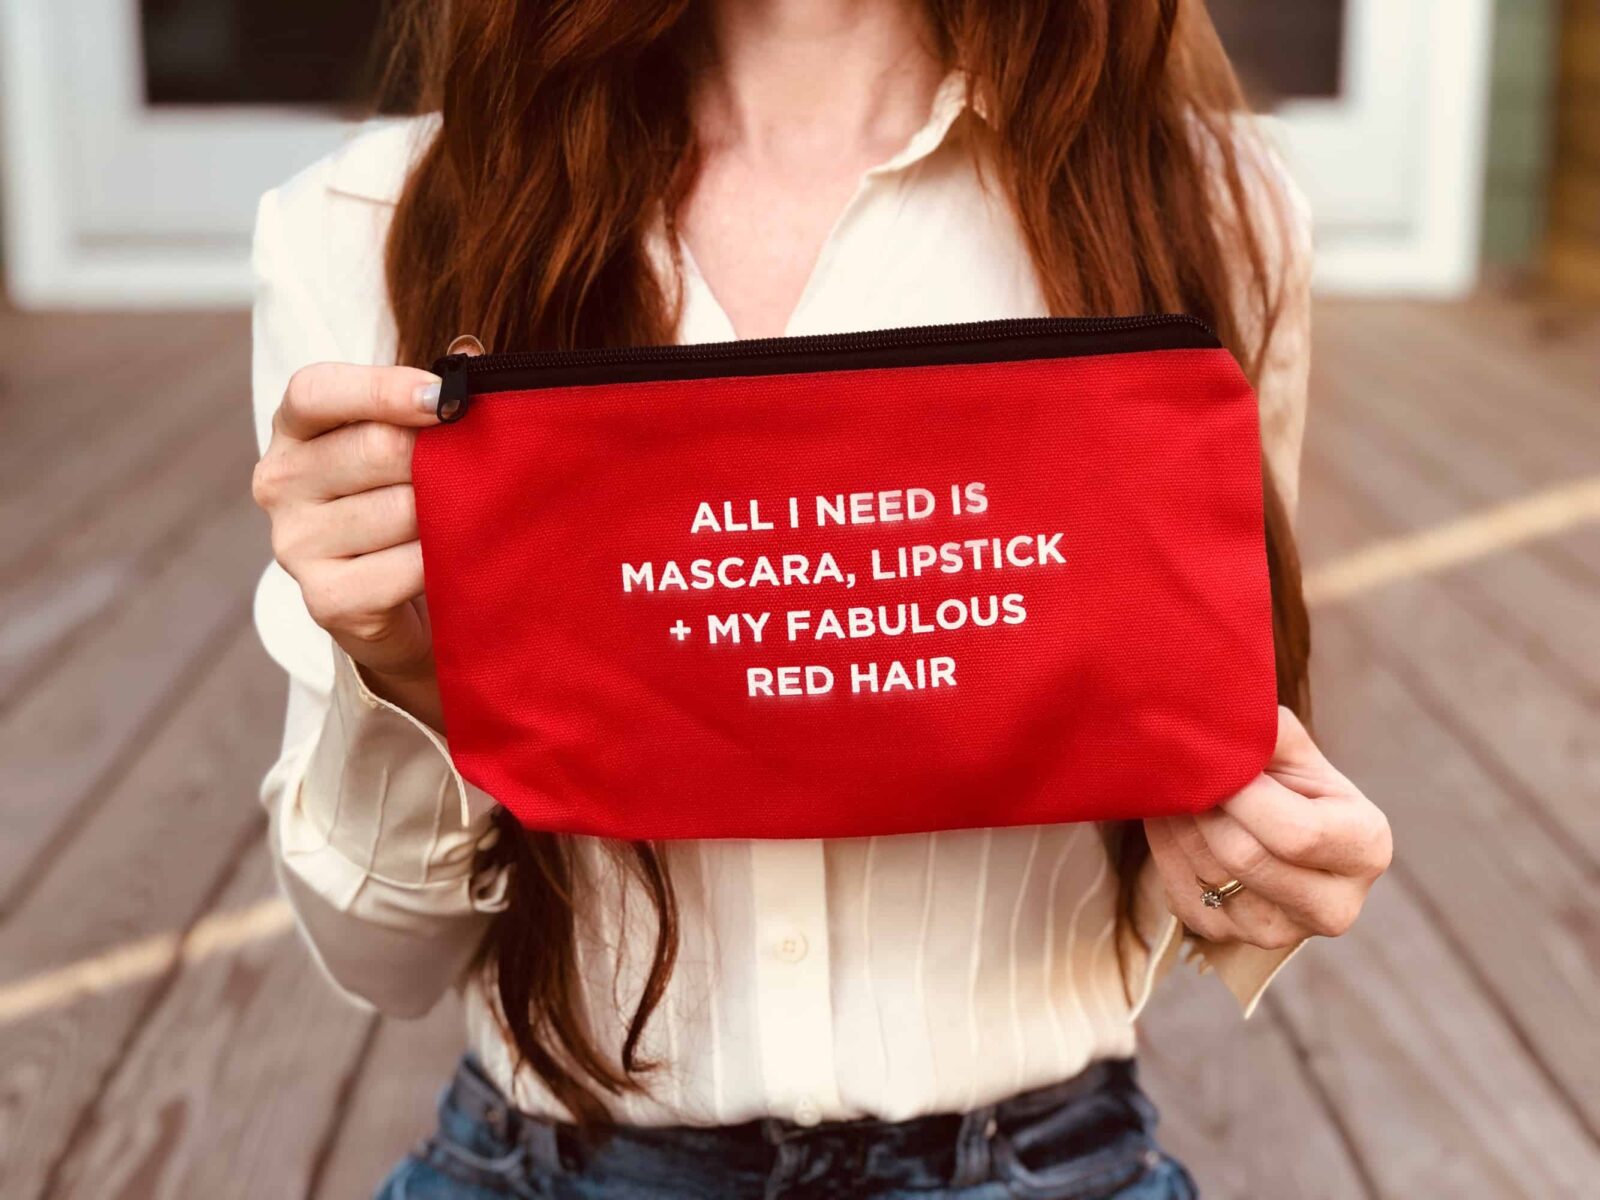 Bonus Redhead Makeup Bag in all July H2BAR Boxes!